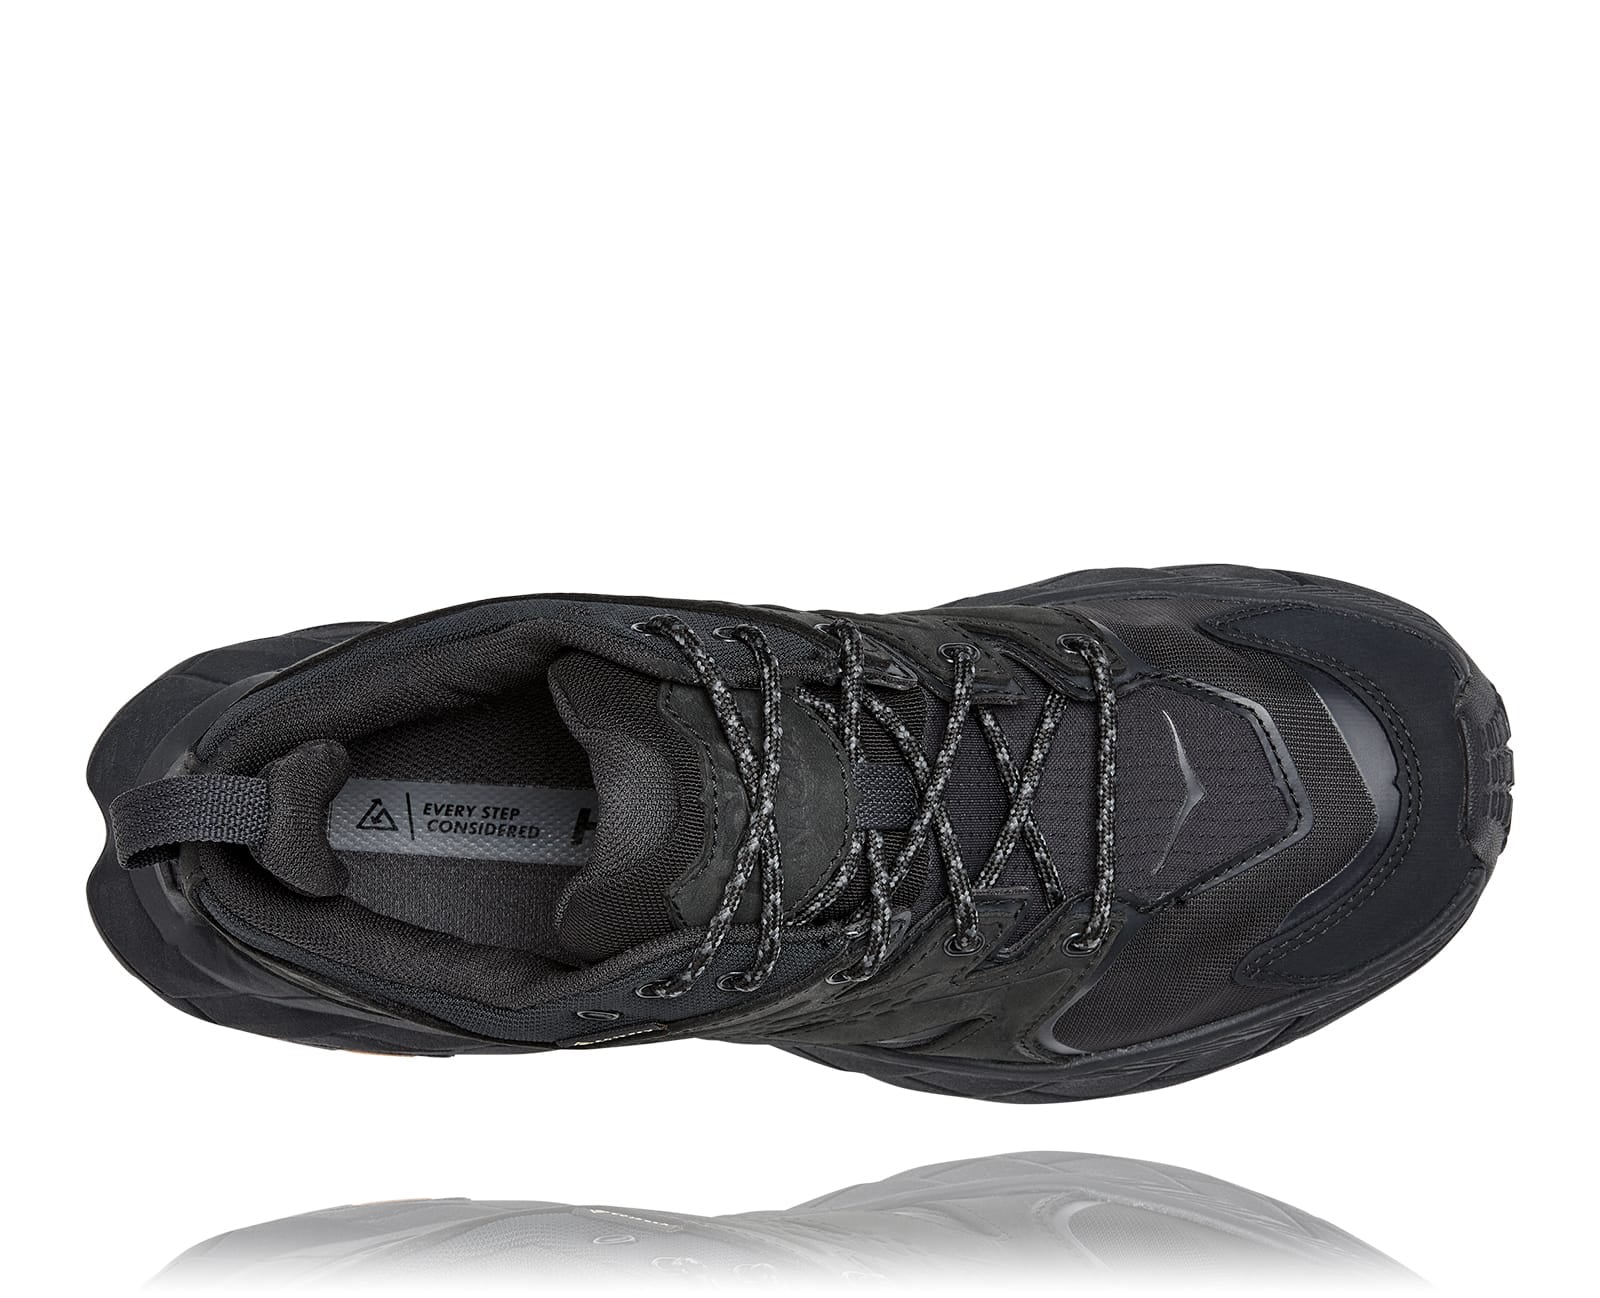 Anacapa W GTX low, svart vattentät sko perfekt för vandring i alla underlag och väder. Hos Hoka specialisterna i Sverige.